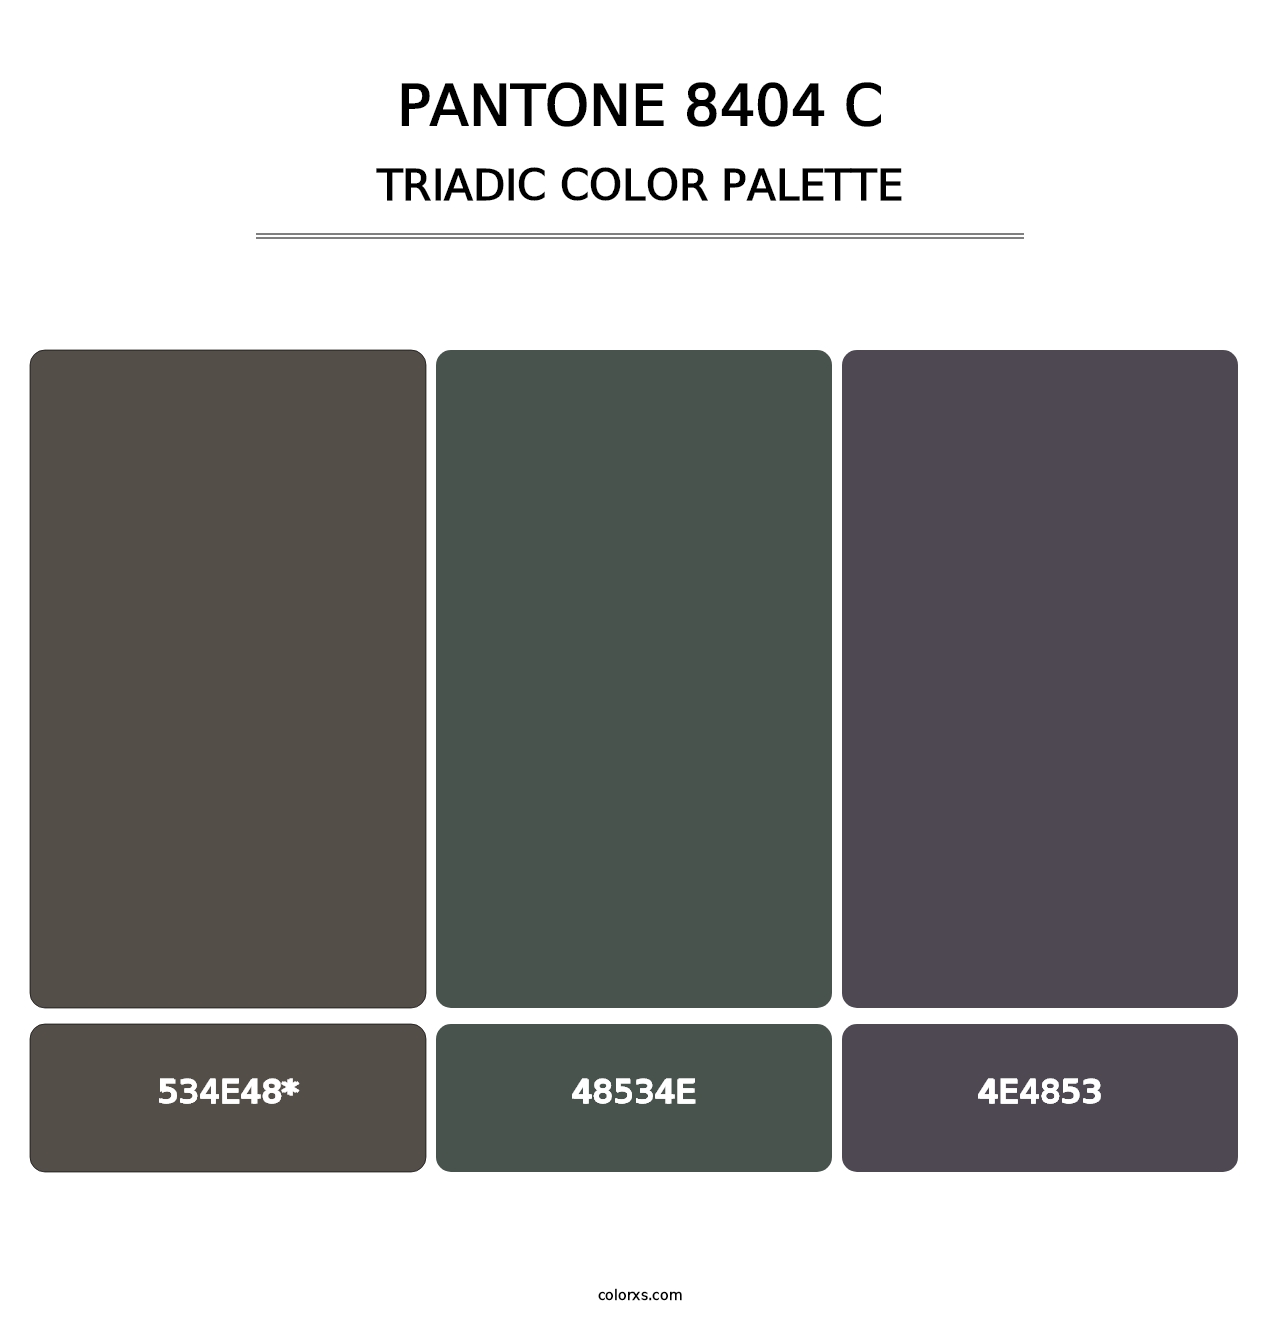 PANTONE 8404 C - Triadic Color Palette